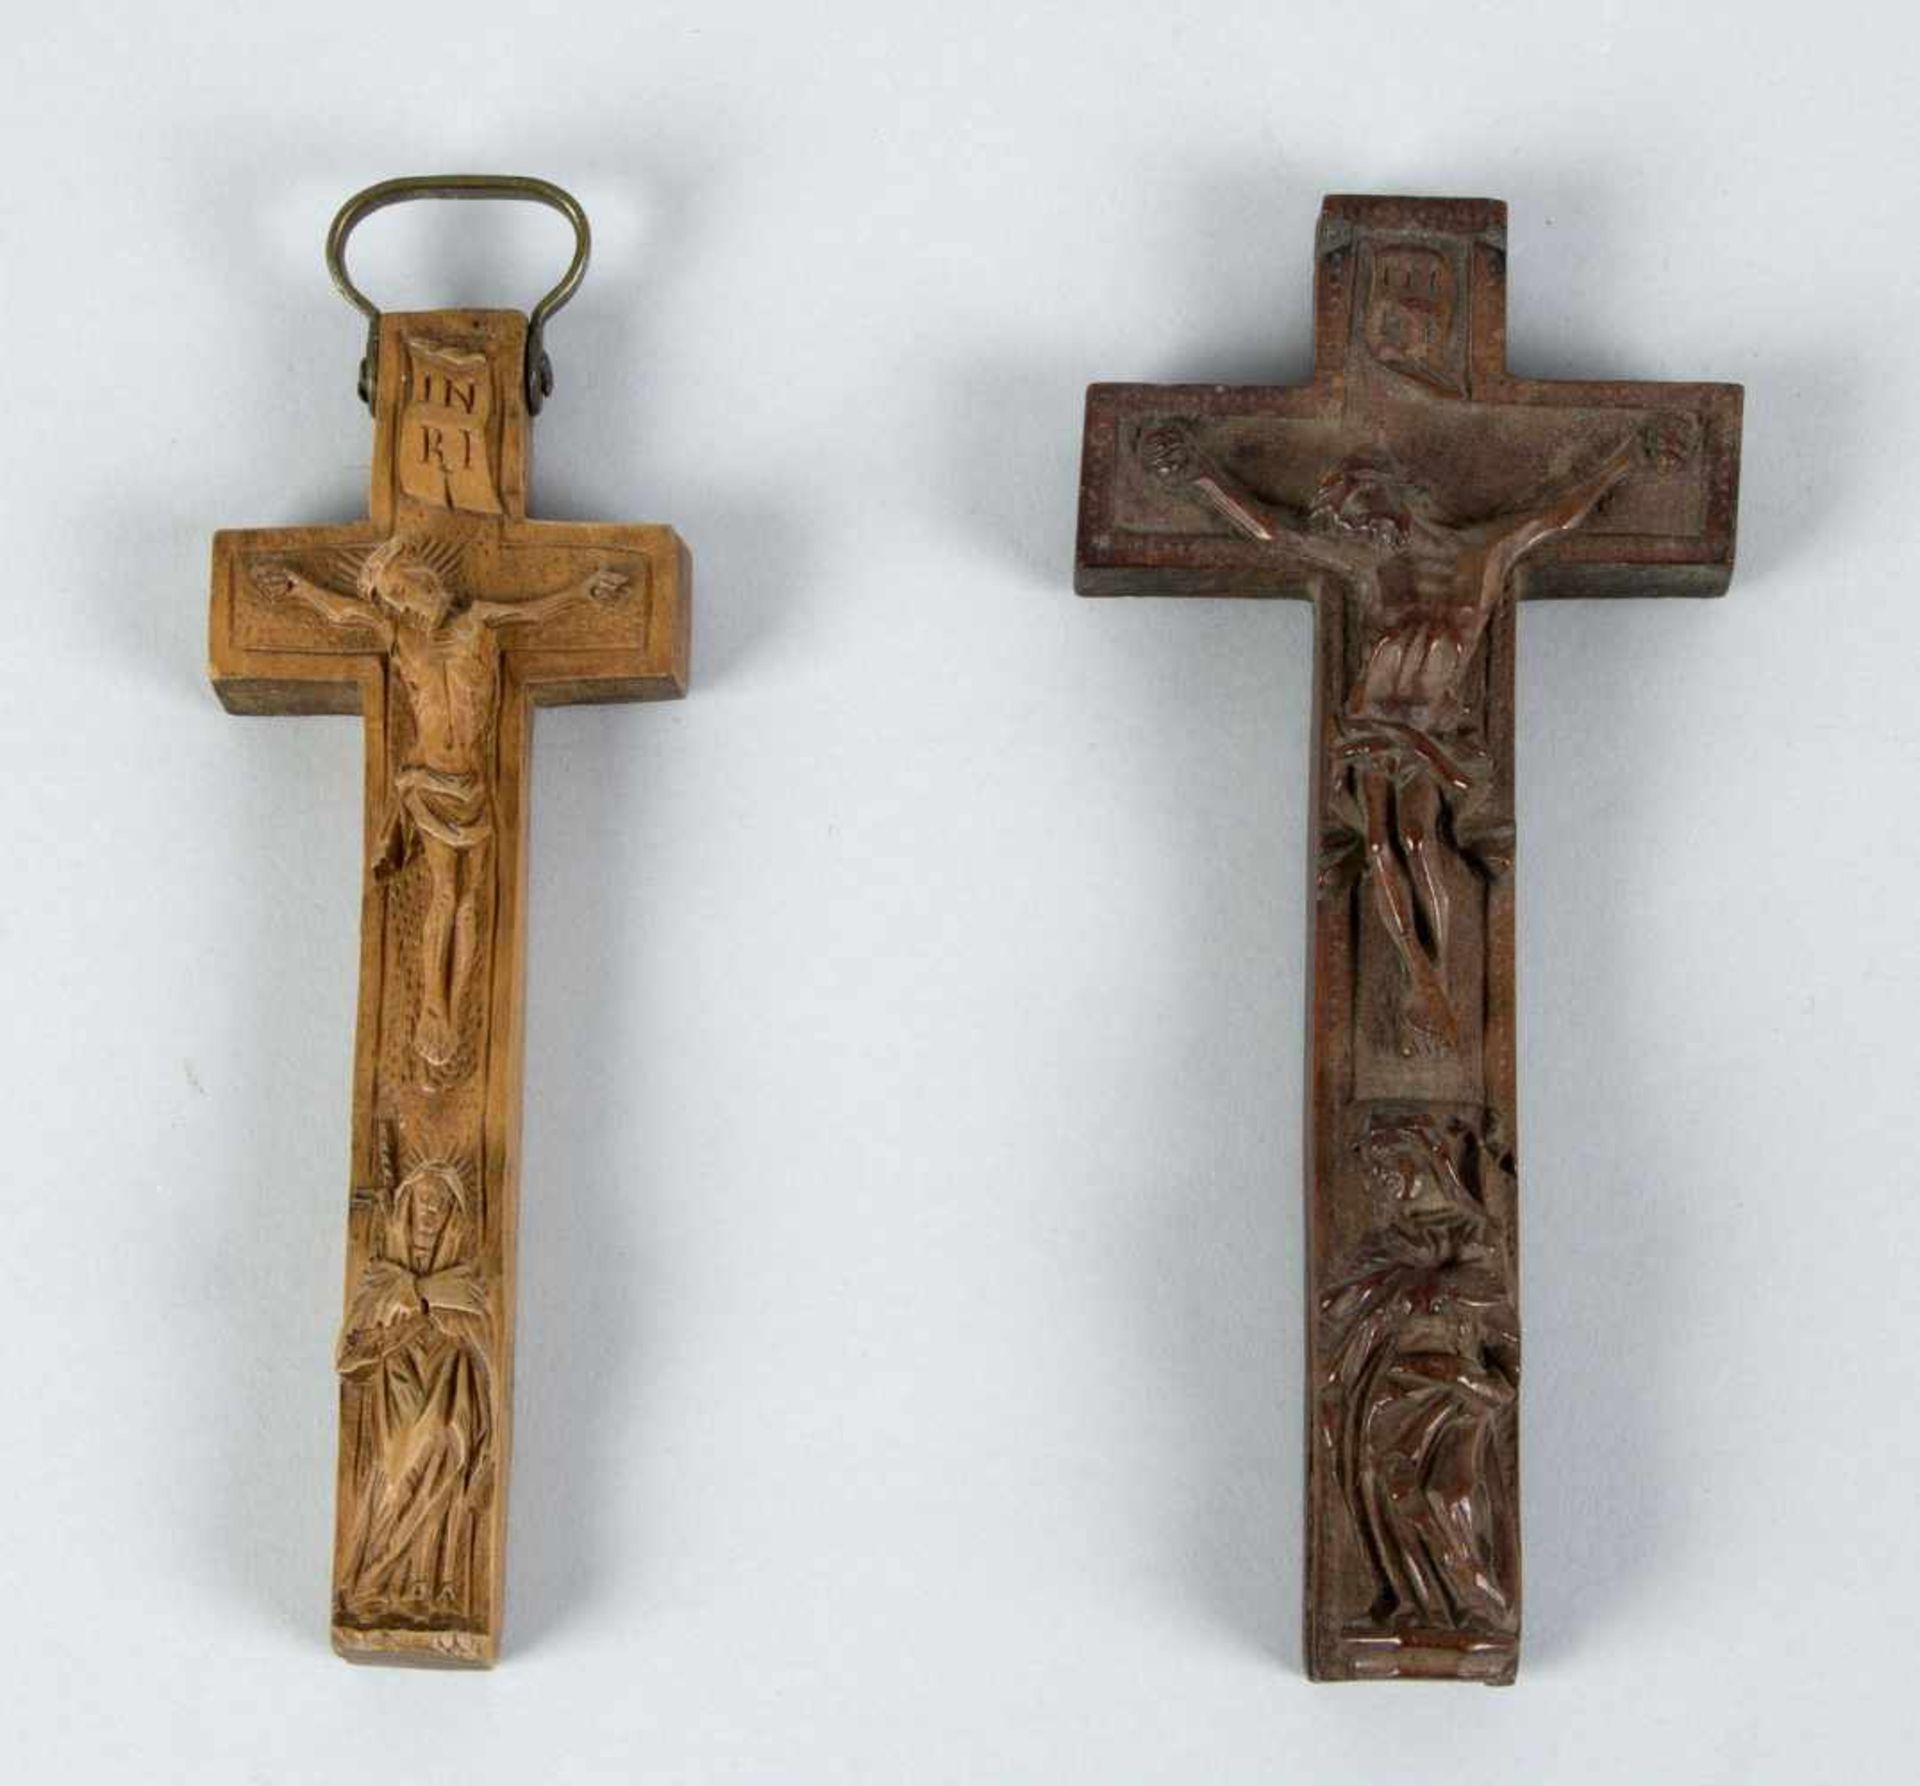 Zwei Reliquien-KreuzeObstholz, geschnitzt. Rückseite mit Reliquien. Oberbayern, 18./19. Jh. H. bis